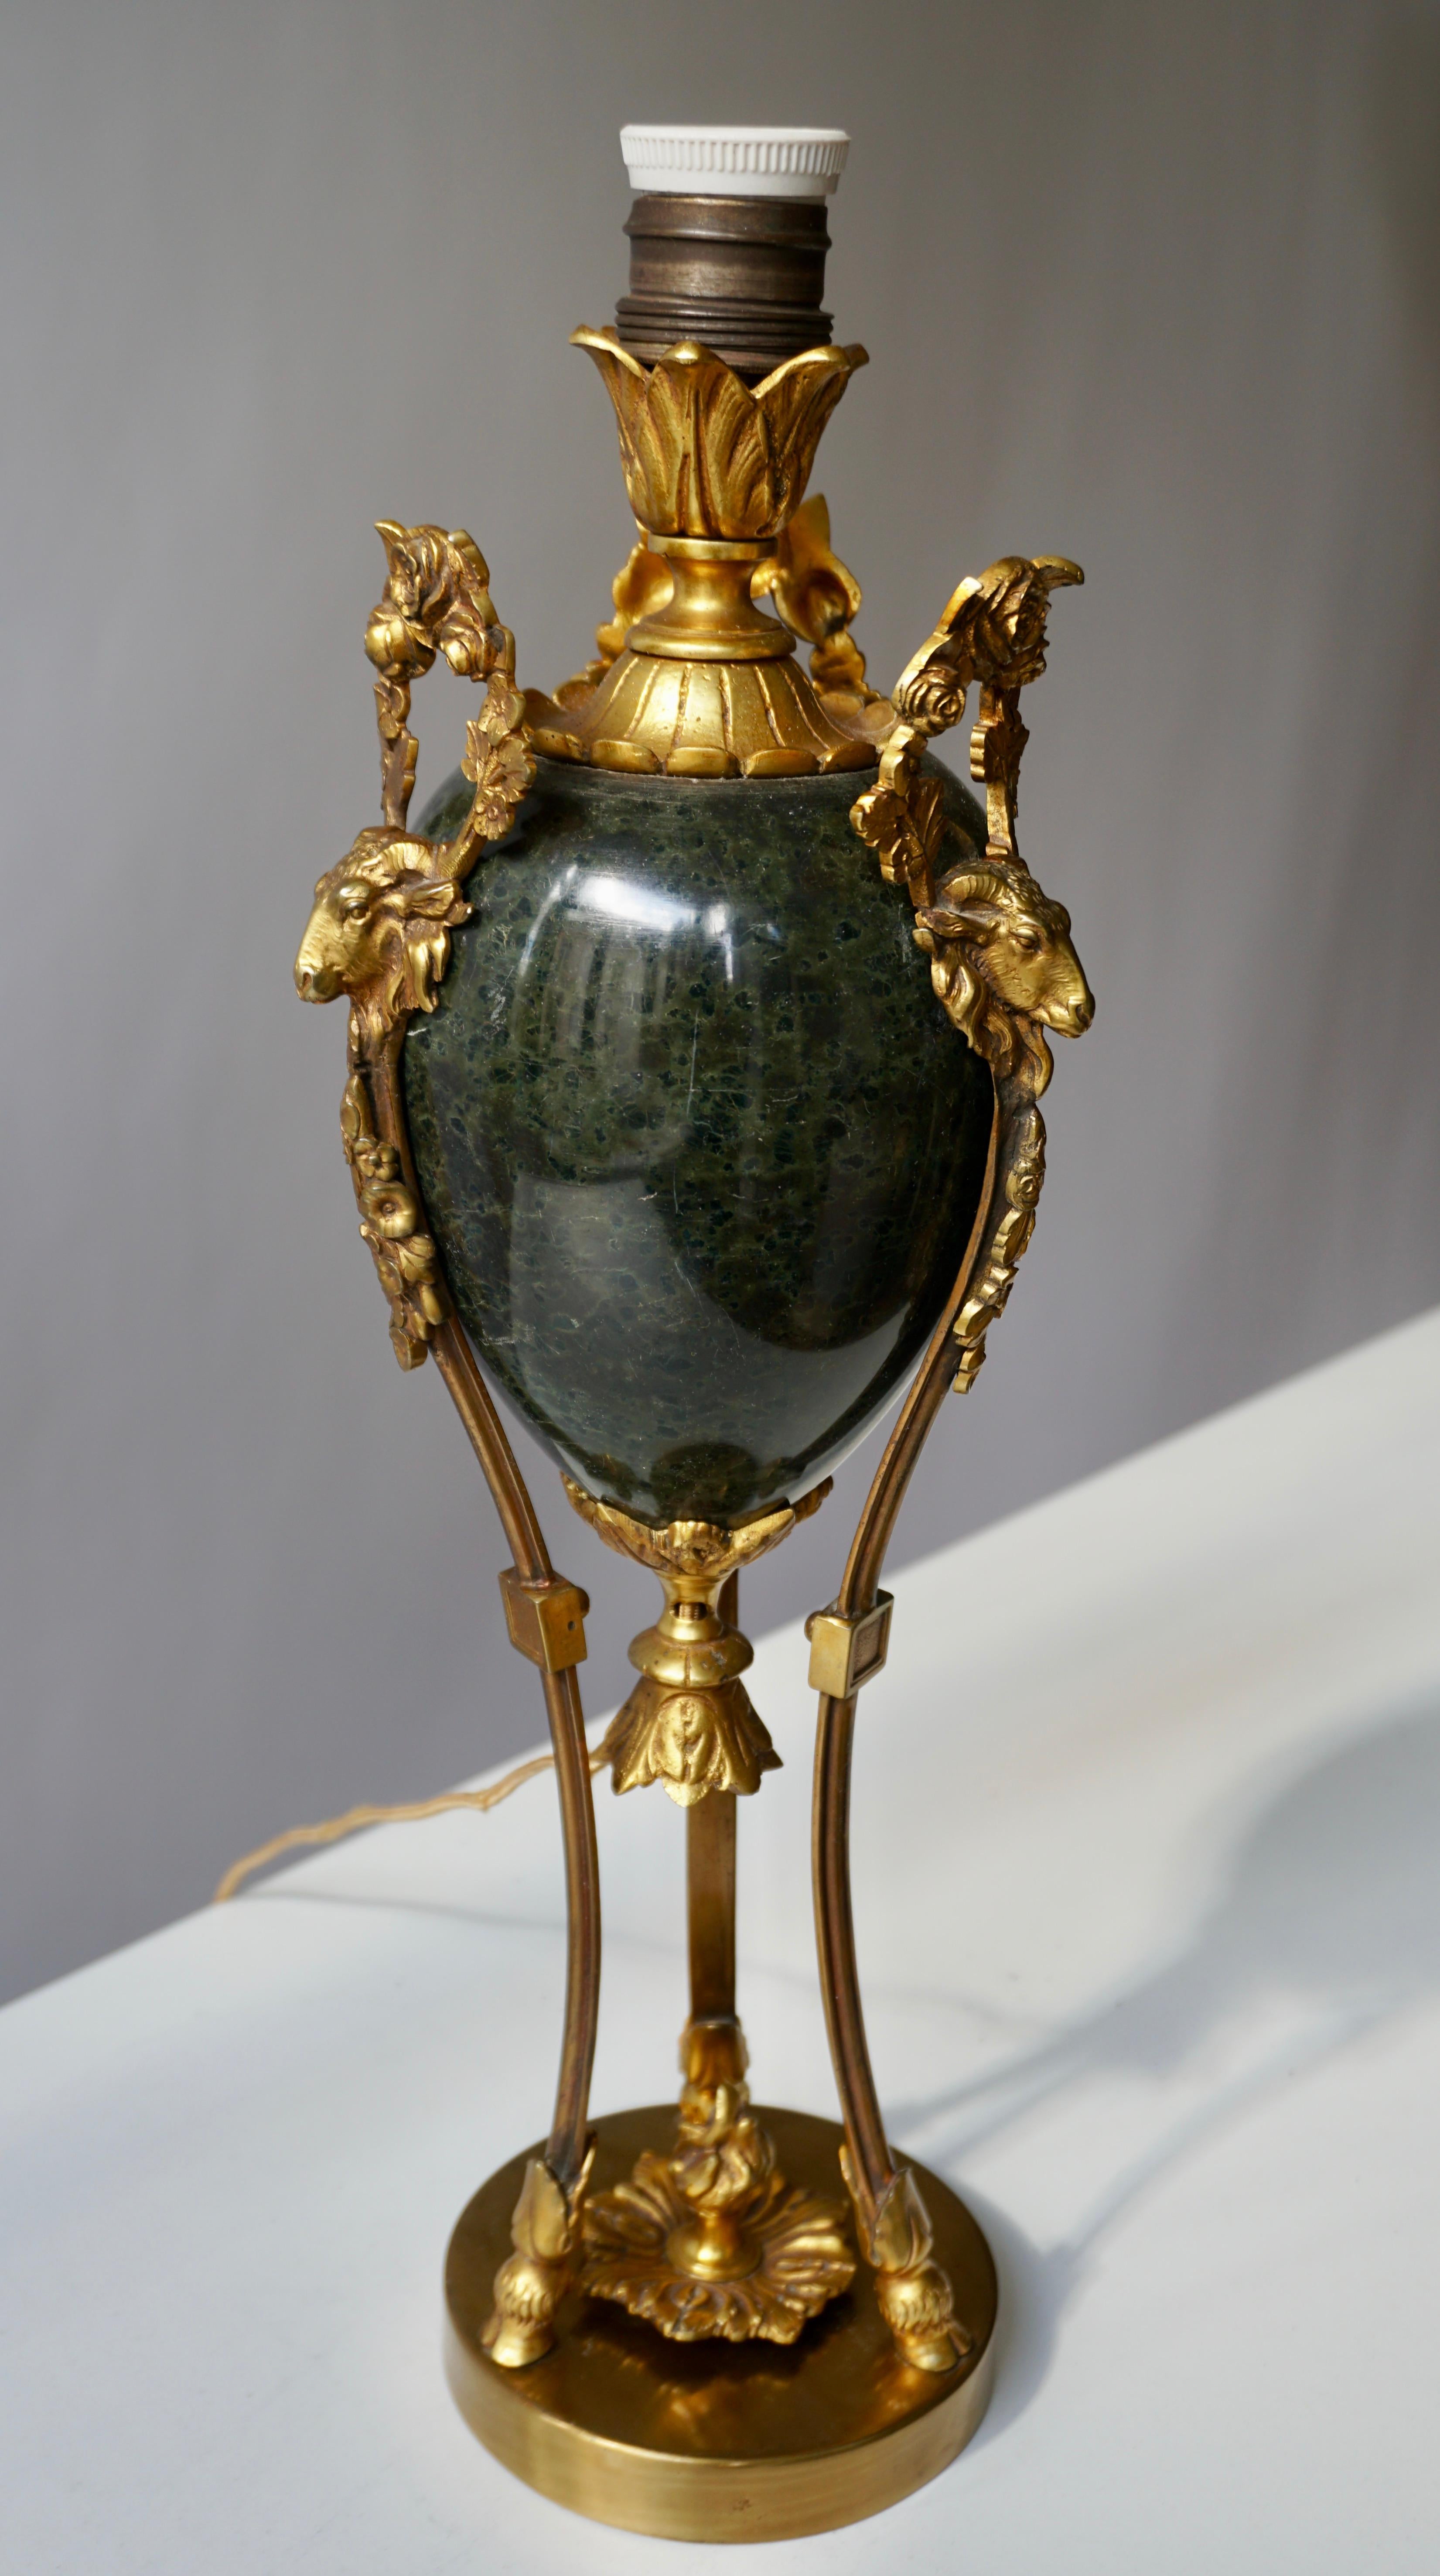 Diese sehr feine und schwere Urne aus schwarzem und grünem Marmor, die mit bronzenen Widderköpfen und bronzenem Ormolu verziert ist, wurde in eine elegante Tischlampe verwandelt. 
Maße: Höhe 46 cm.
Durchmesser 14 cm.
Gewicht 3 kg.